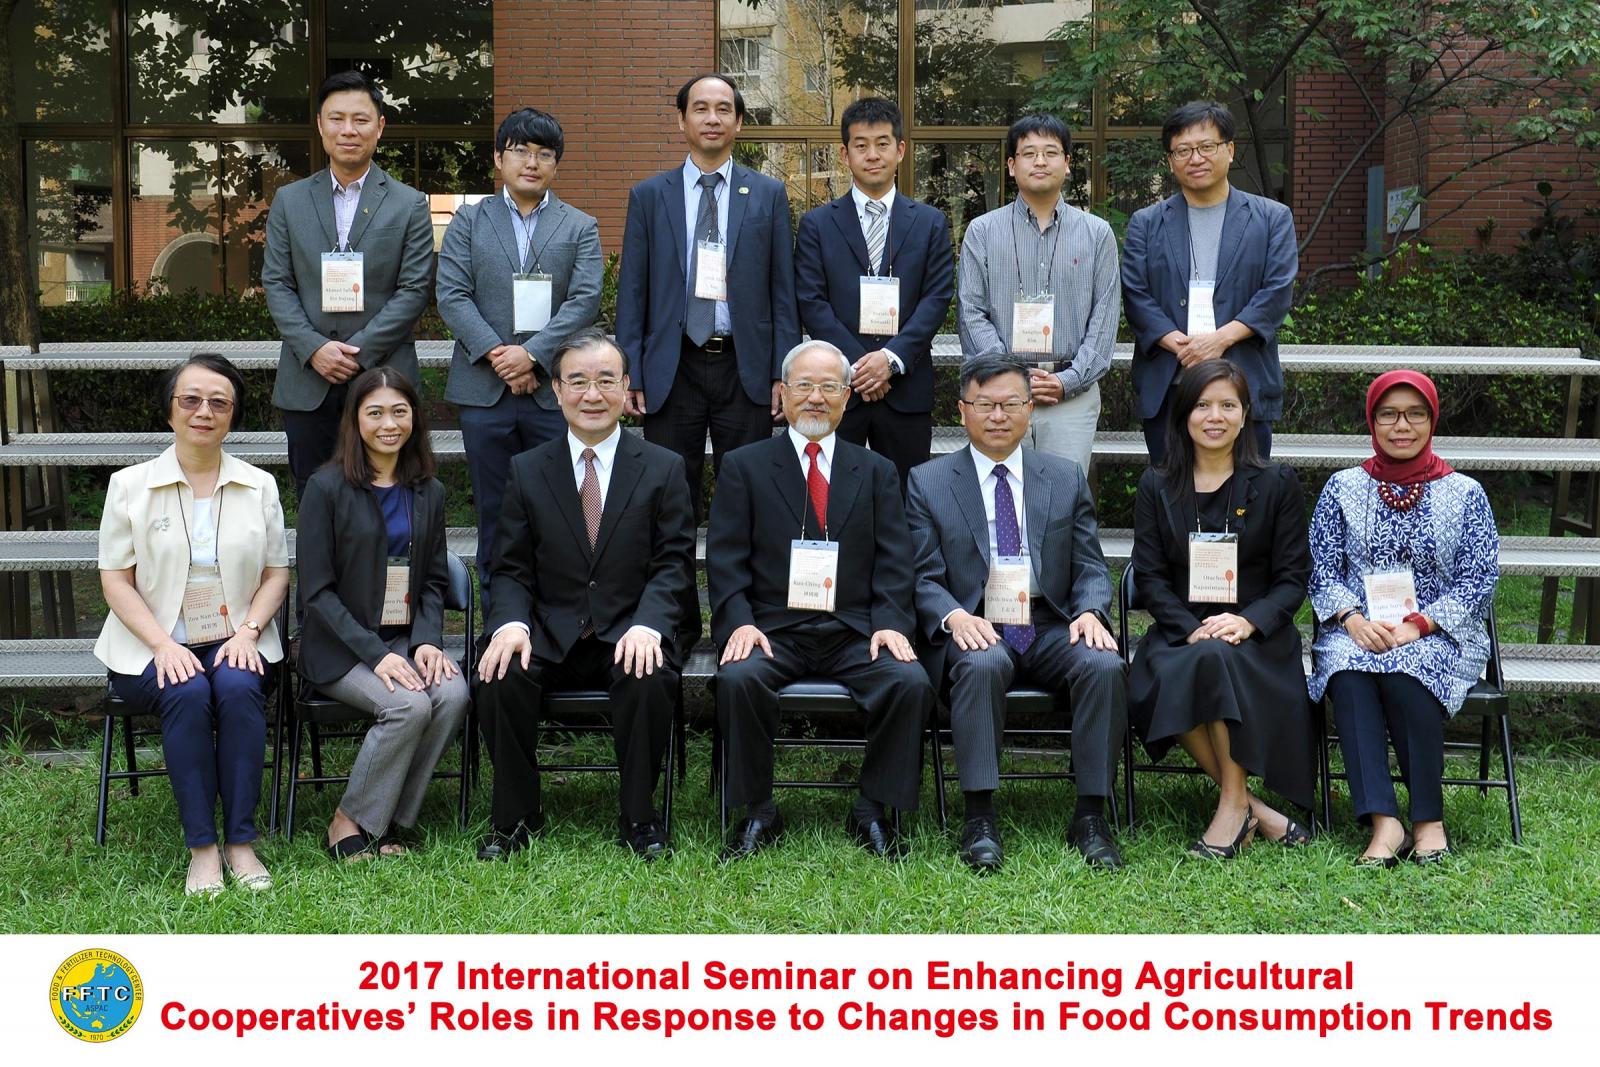 日本、韓國、馬來西亞、菲律賓、泰國、越南、印尼及我國等8個國家10位產官學講者與農民組織團體代表約50名參加